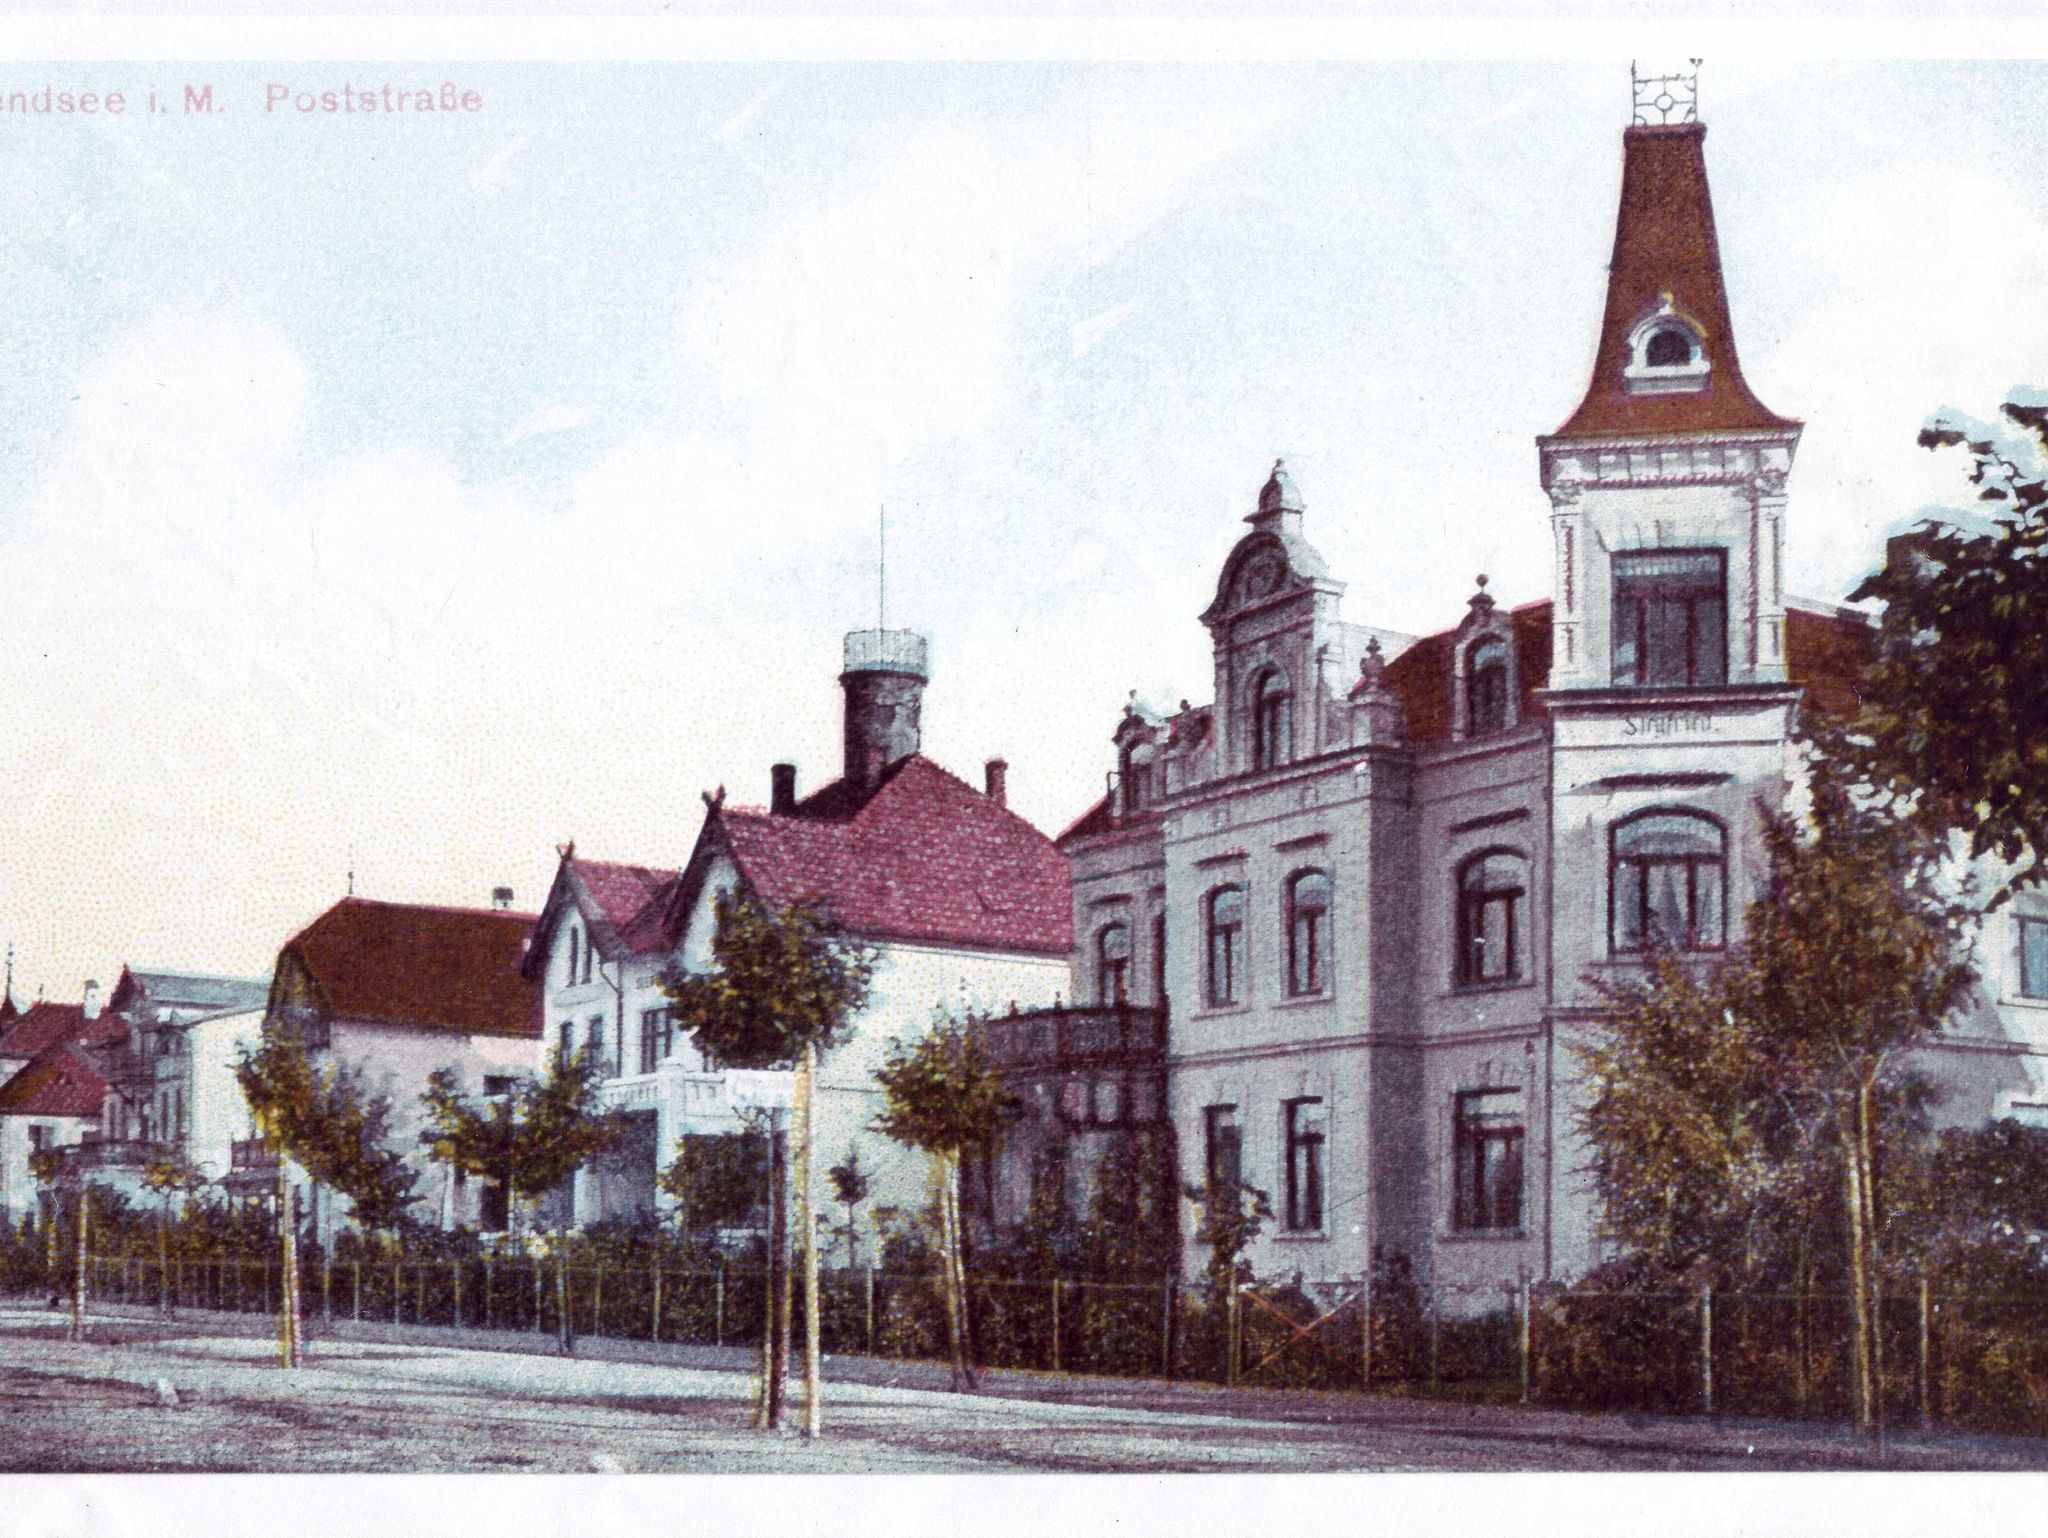 Hotel Flämischer Hof